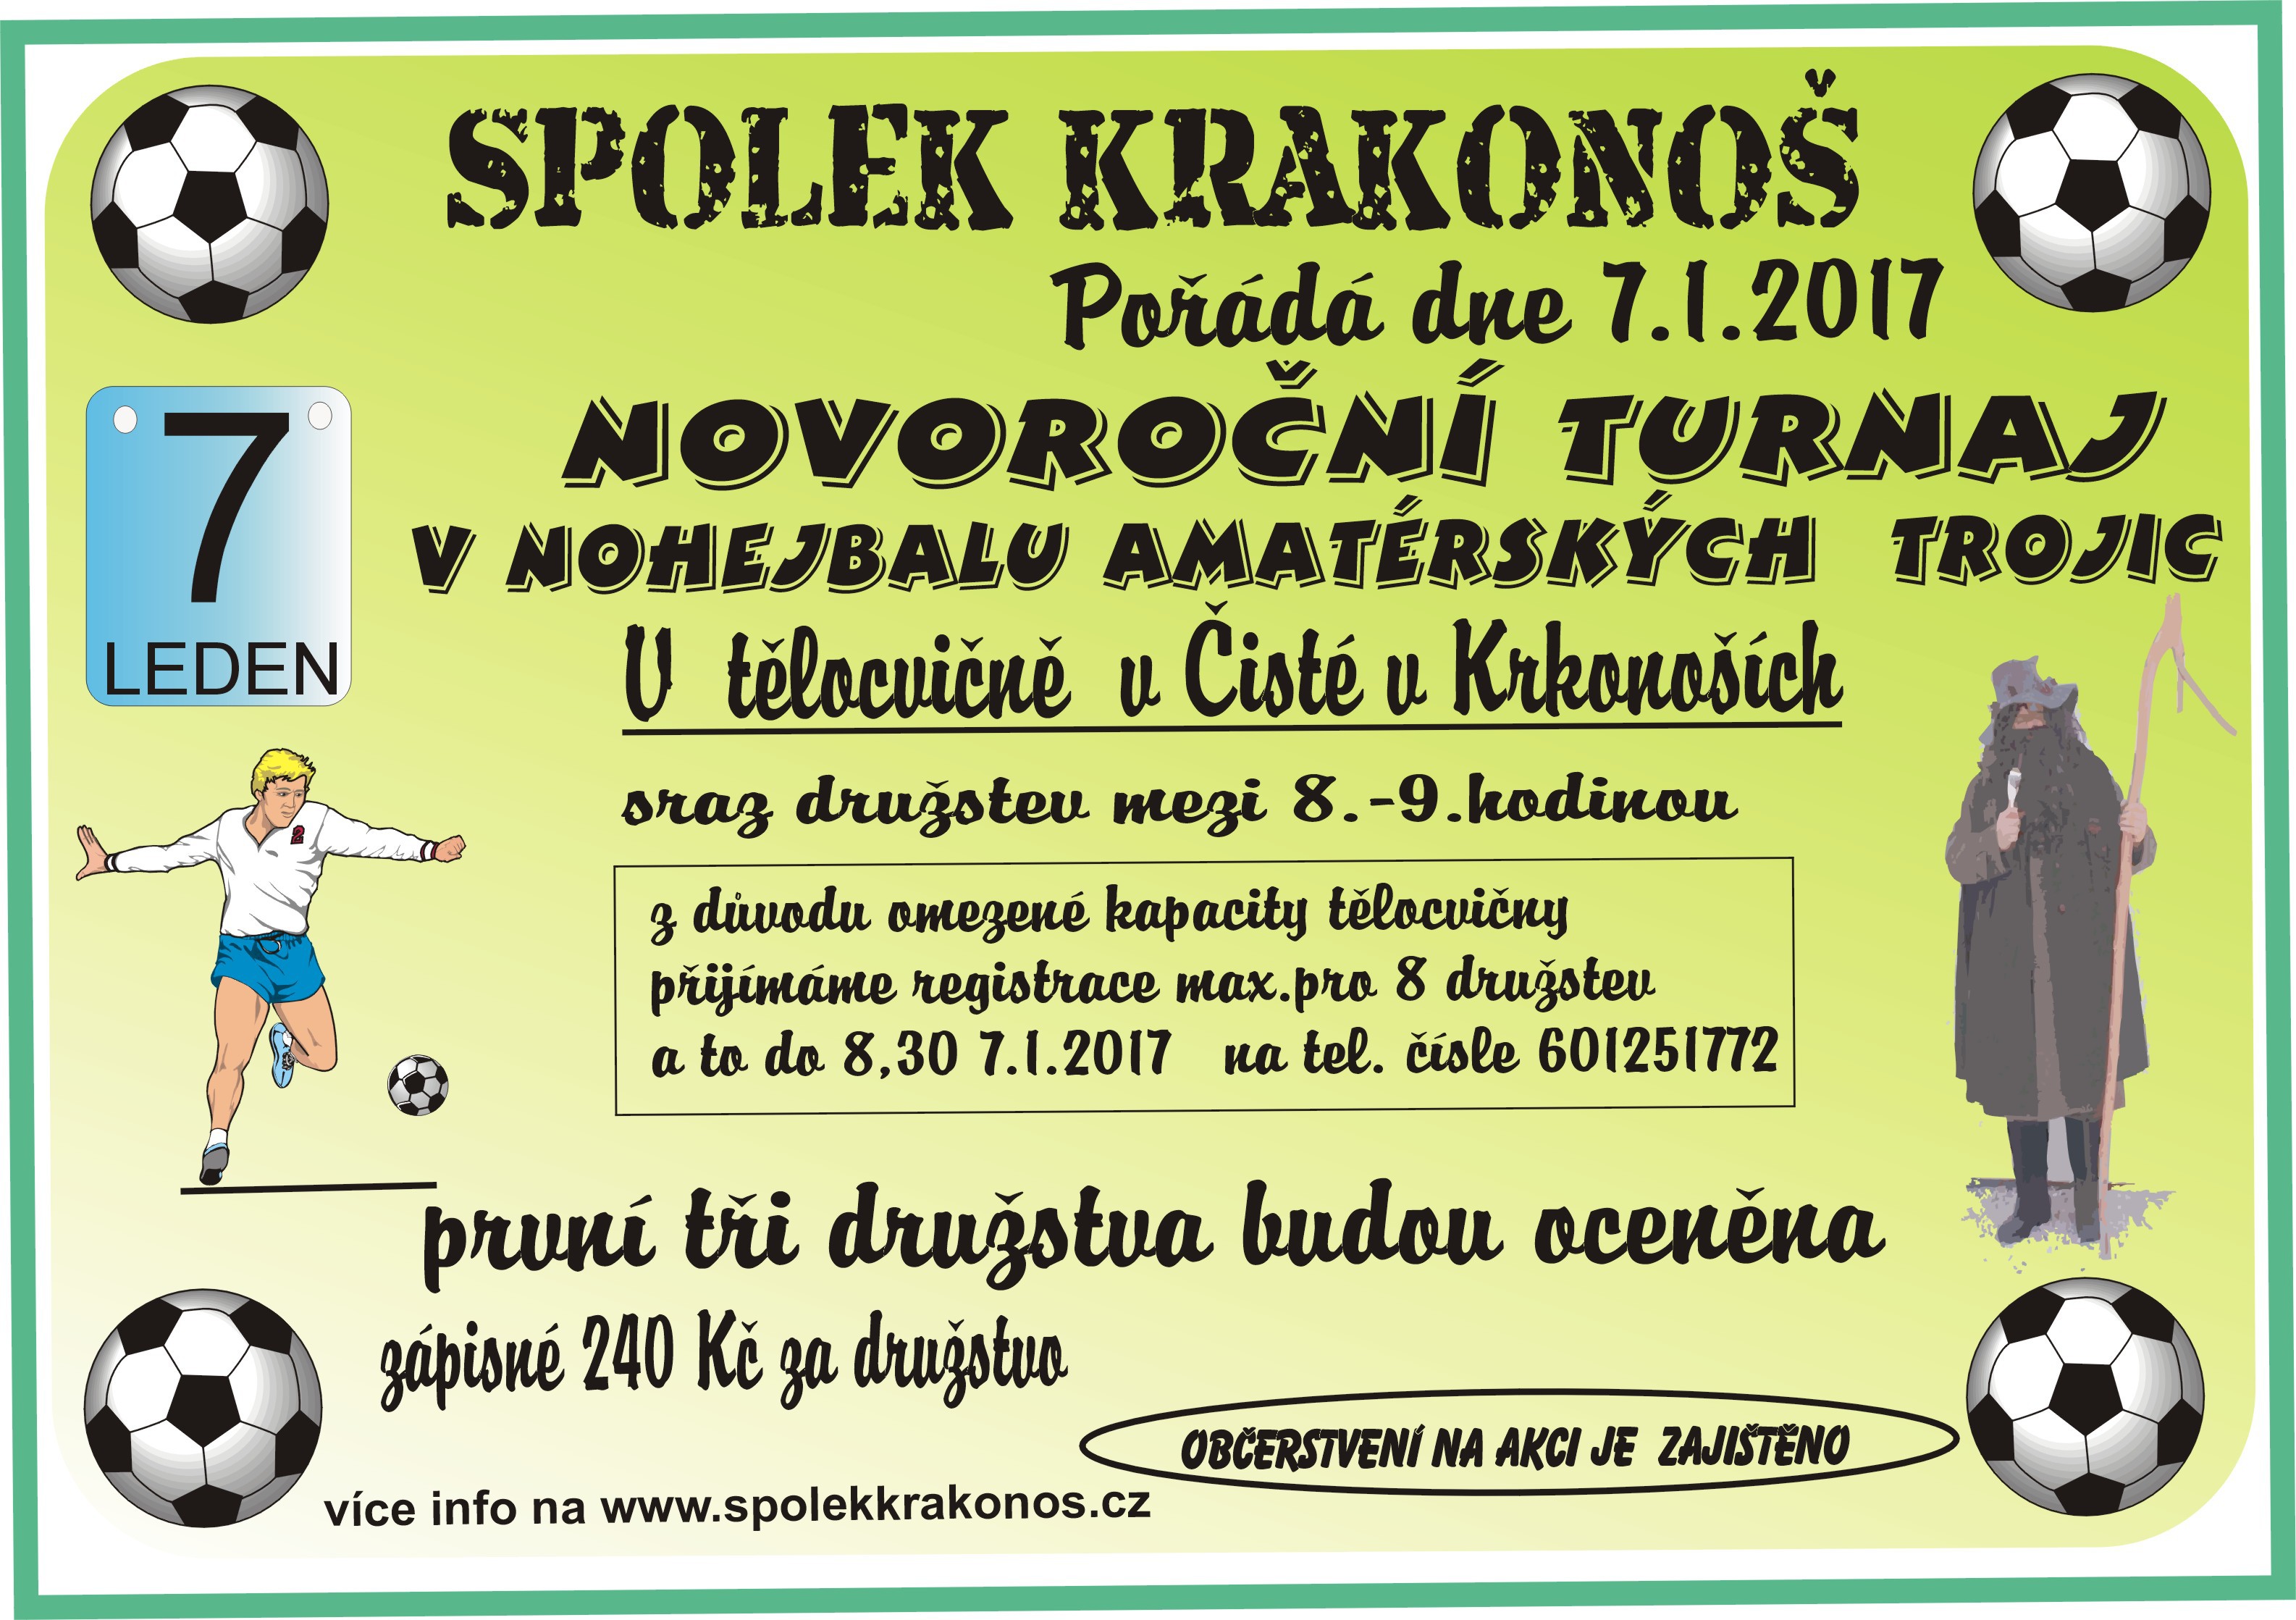 novorocni-turnaj-7.1.2017.jpg